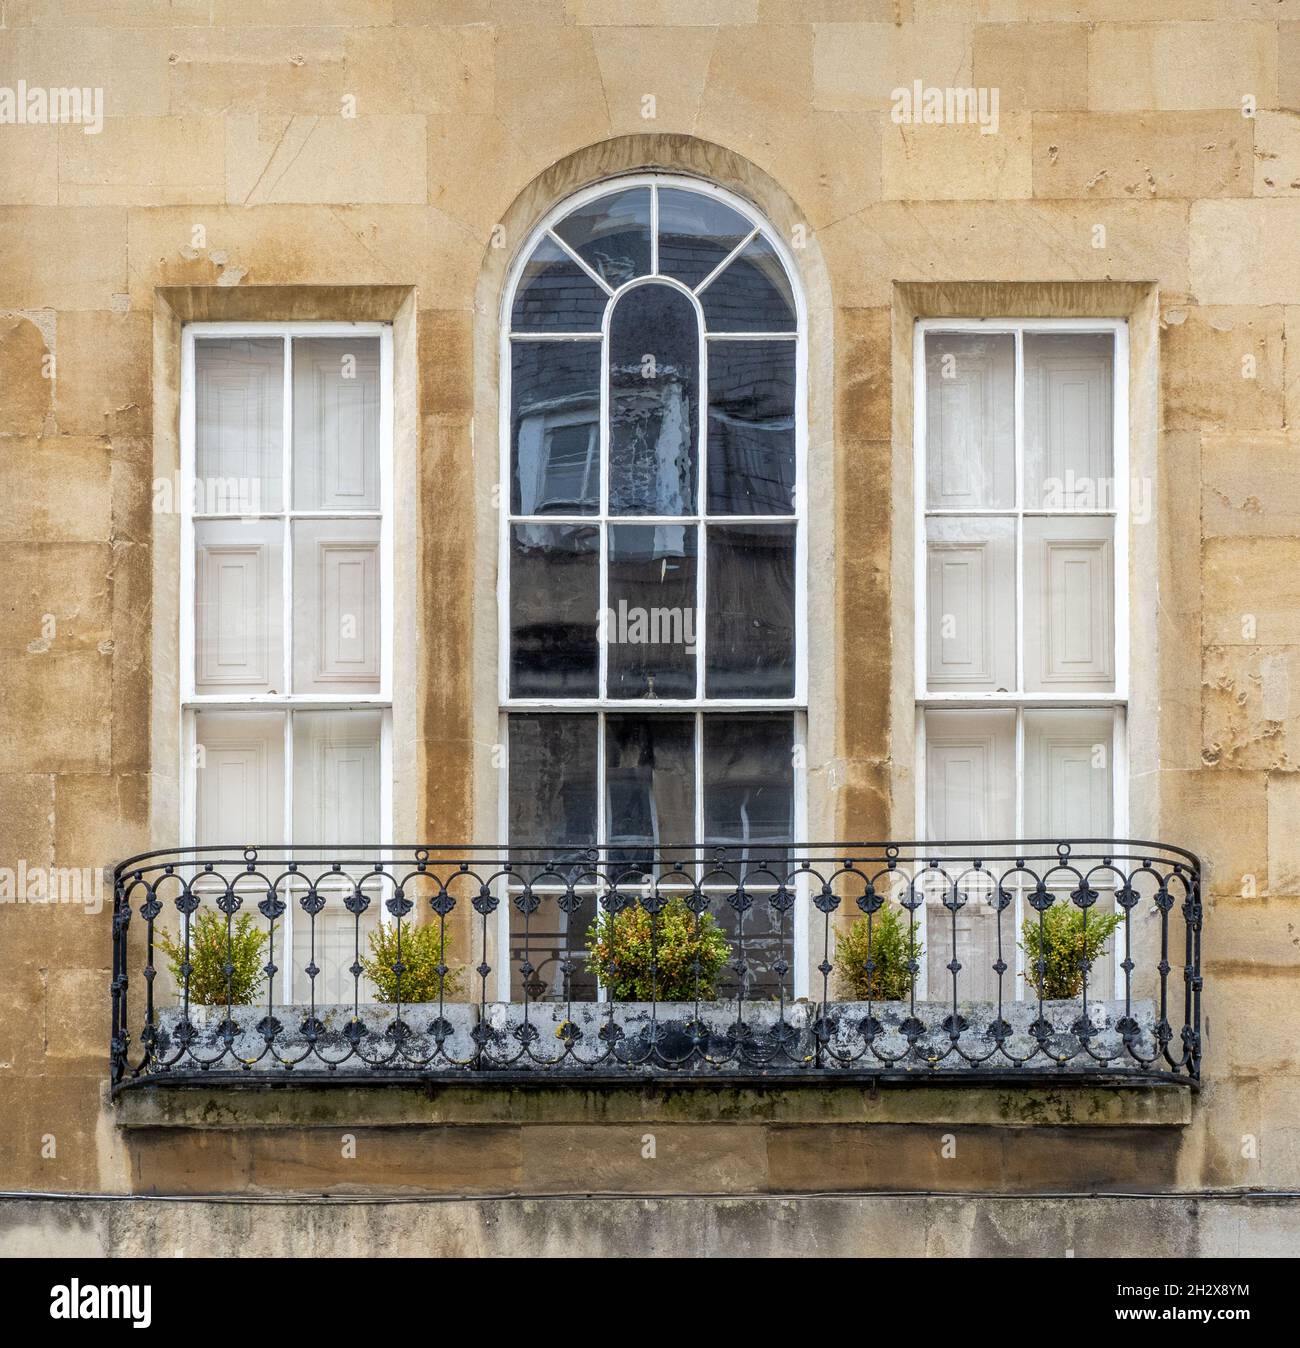 Elegante finestra georgiana a tre ante con finestra centrale ad arco frontata da un balcone in ferro battuto - Bath Somerset UK Foto Stock